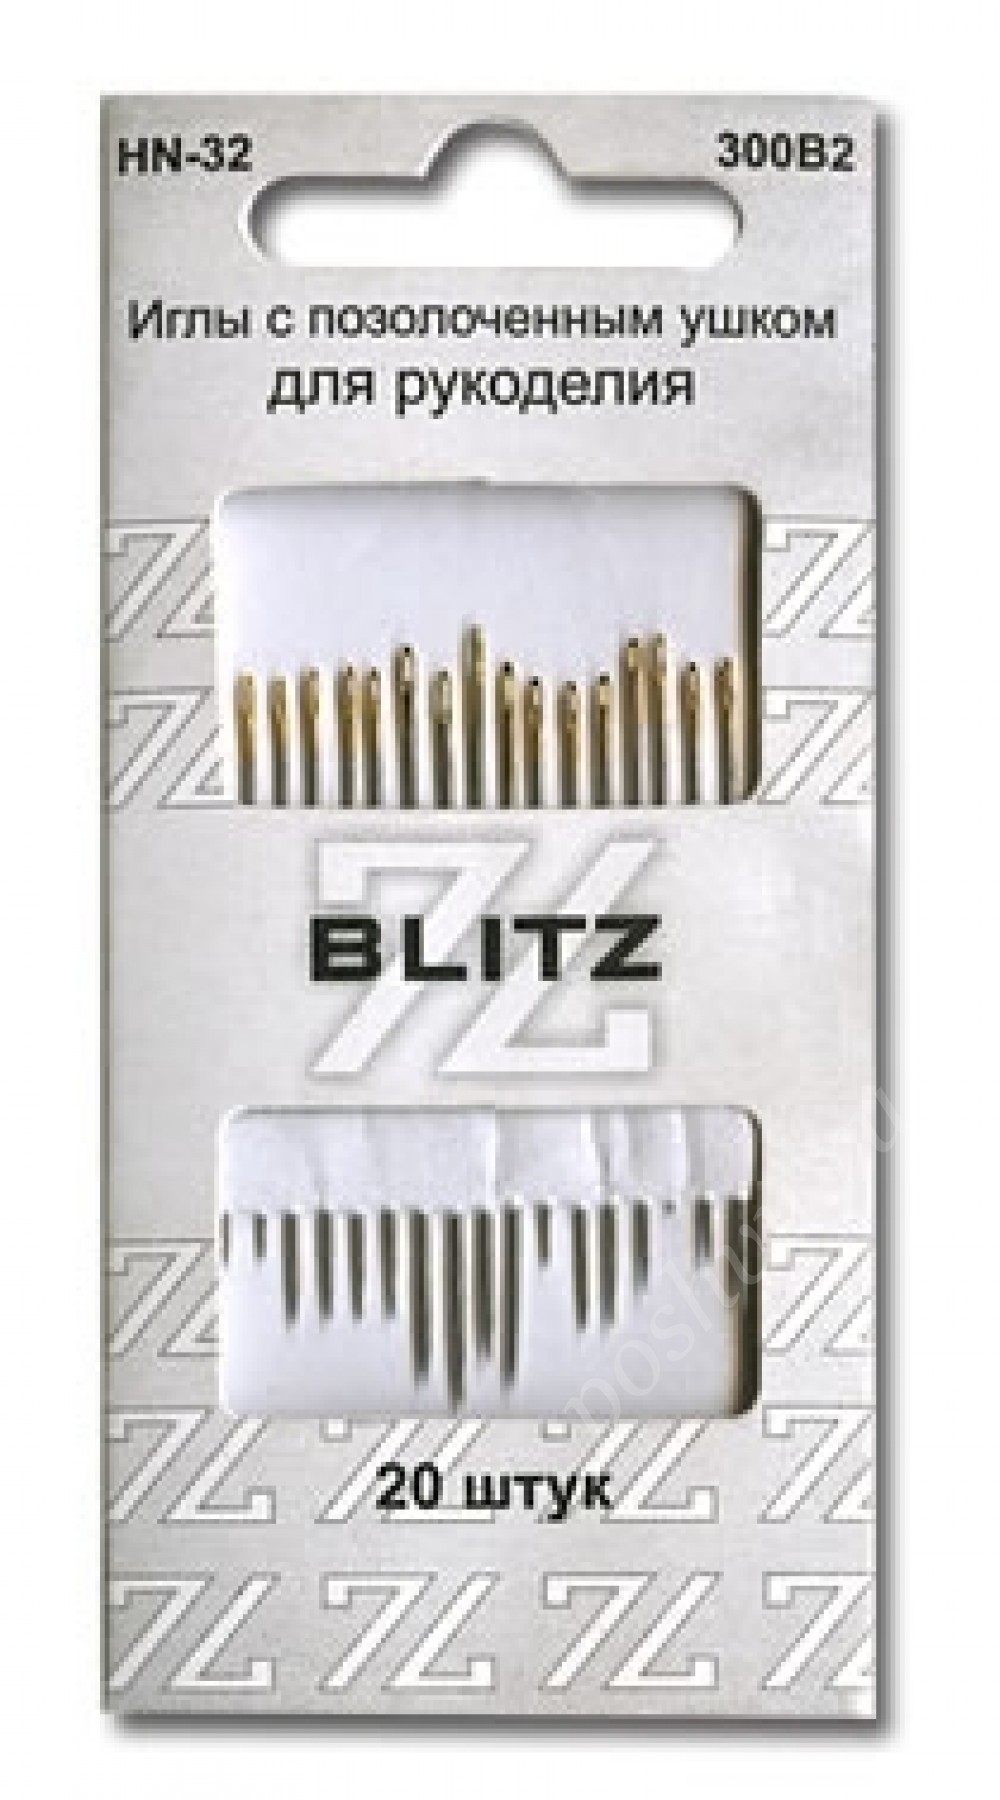 Иглы для шитья ручные "BLITZ" для рукоделия HN-32 300В2 в блистере 20 шт.